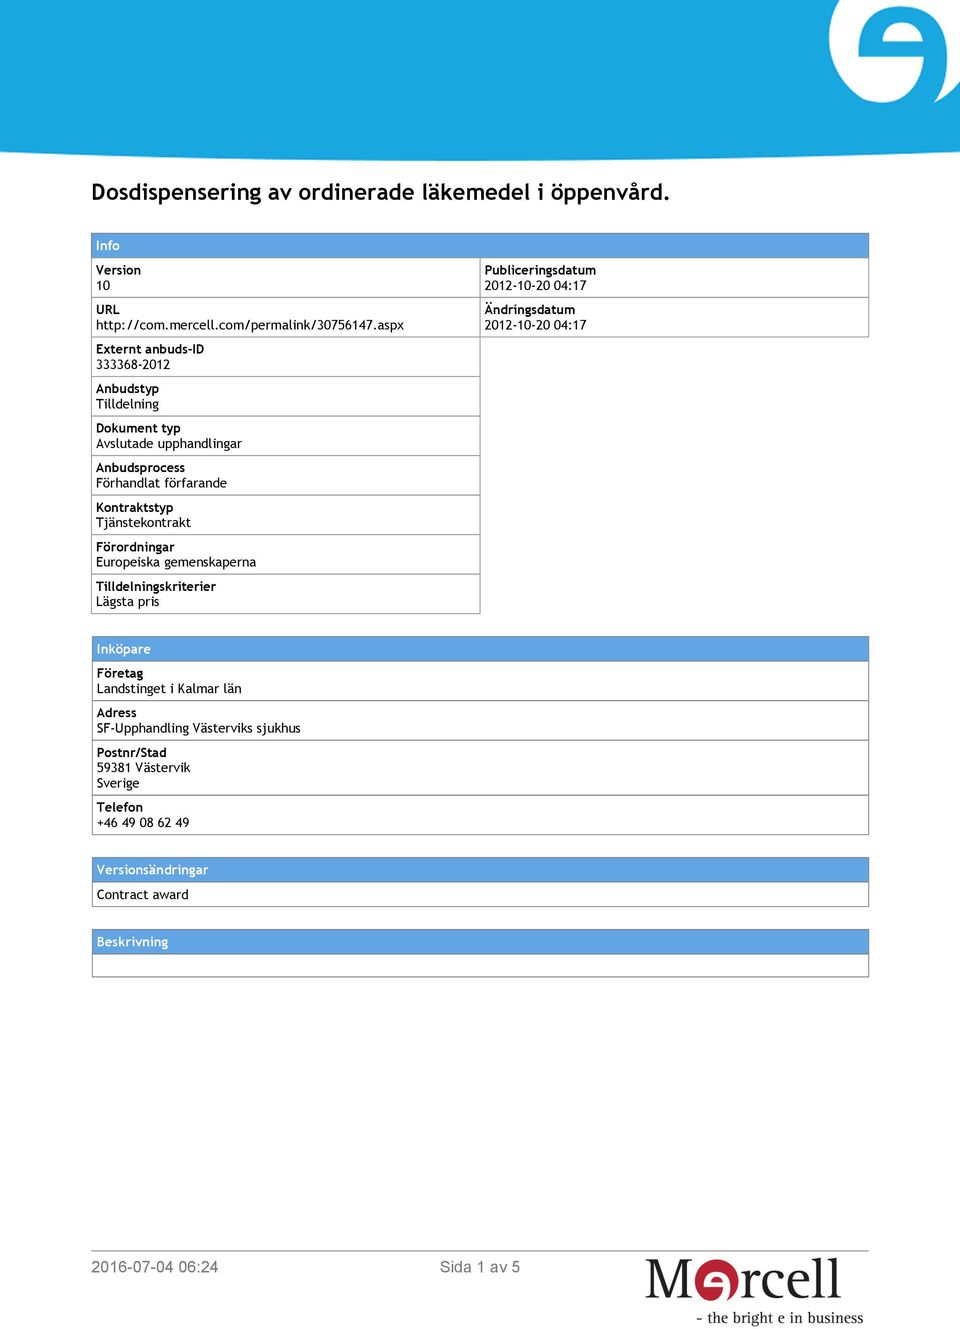 Tjänstekontrakt Förordningar Europeiska gemenskaperna Tilldelningskriterier Lägsta pris Publiceringsdatum 2012-10-20 04:17 Ändringsdatum 2012-10-20